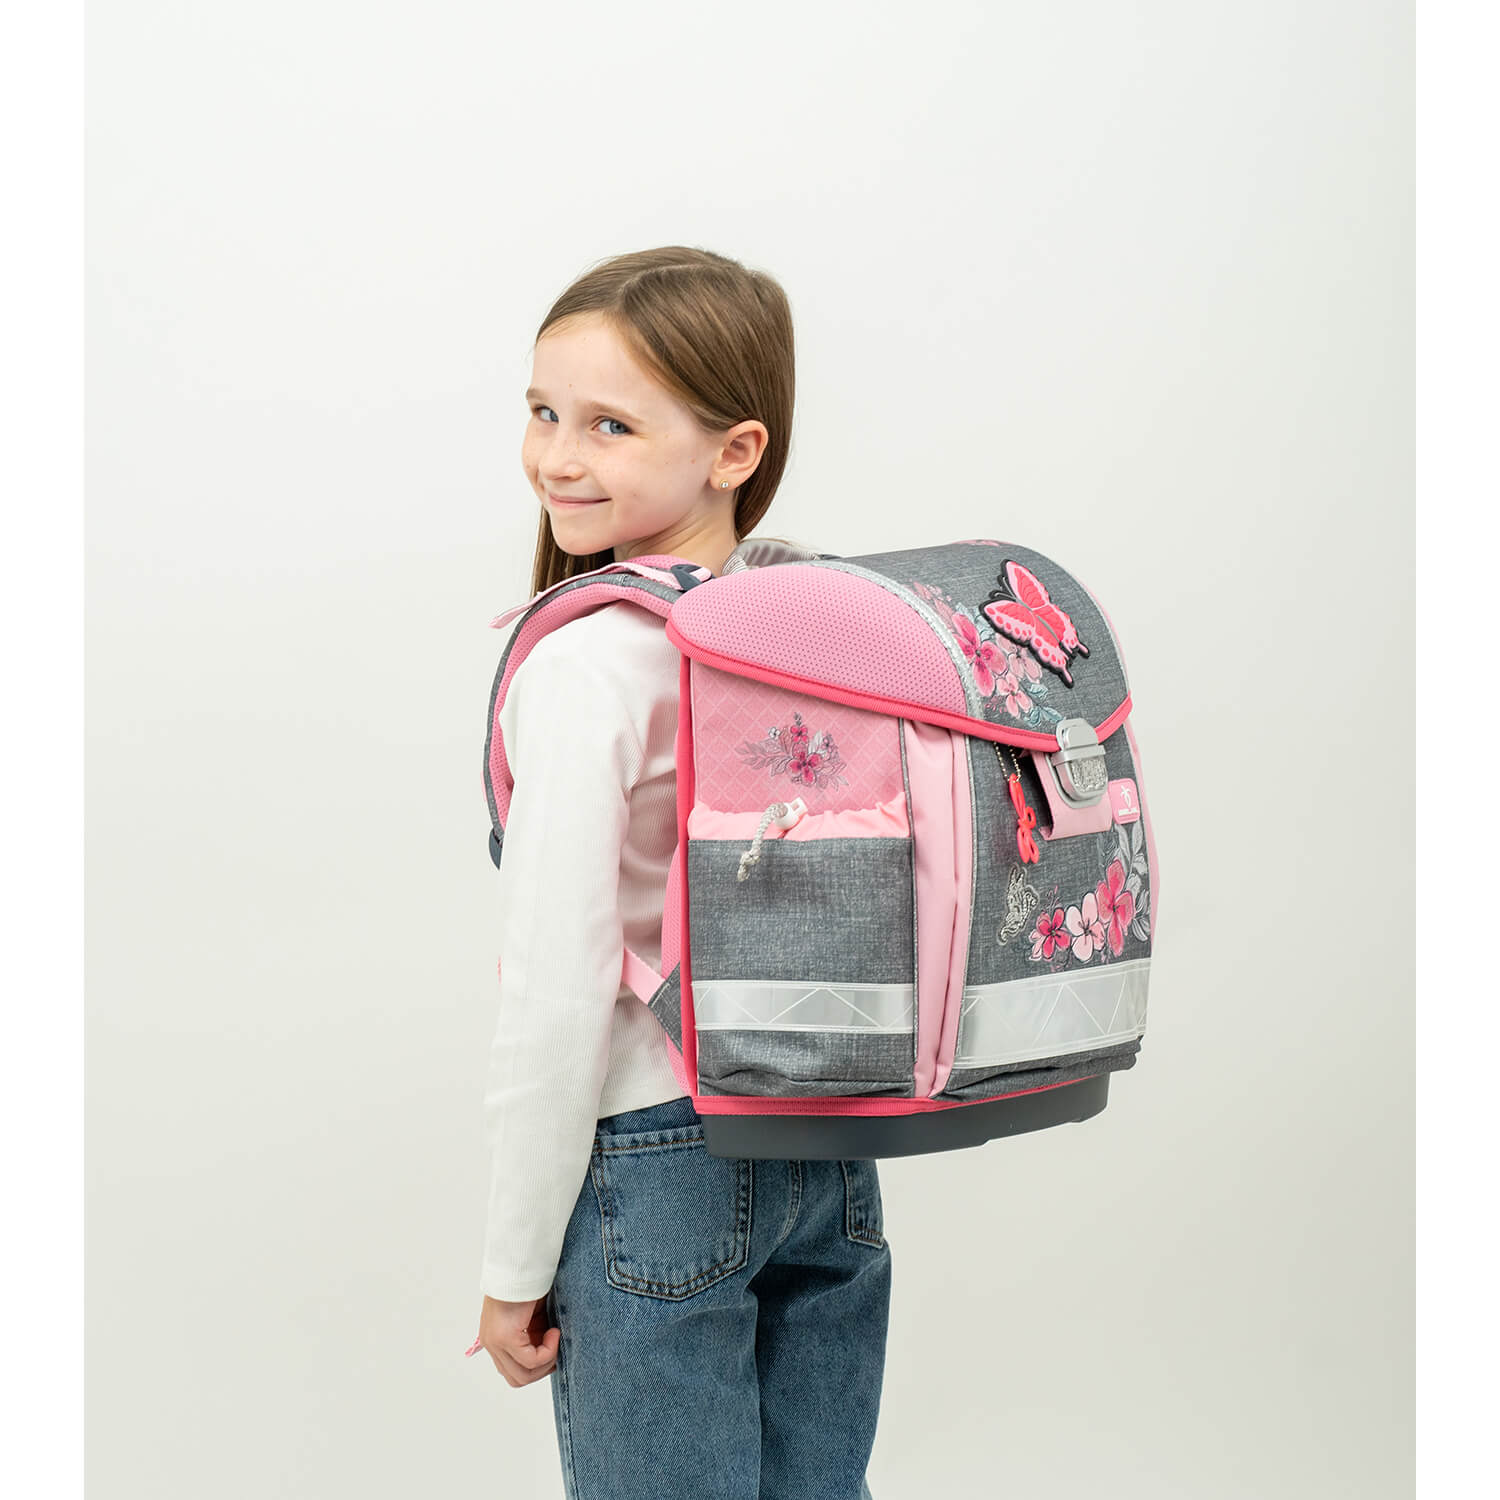 Classy Elegant schoolbag set 4 pcs